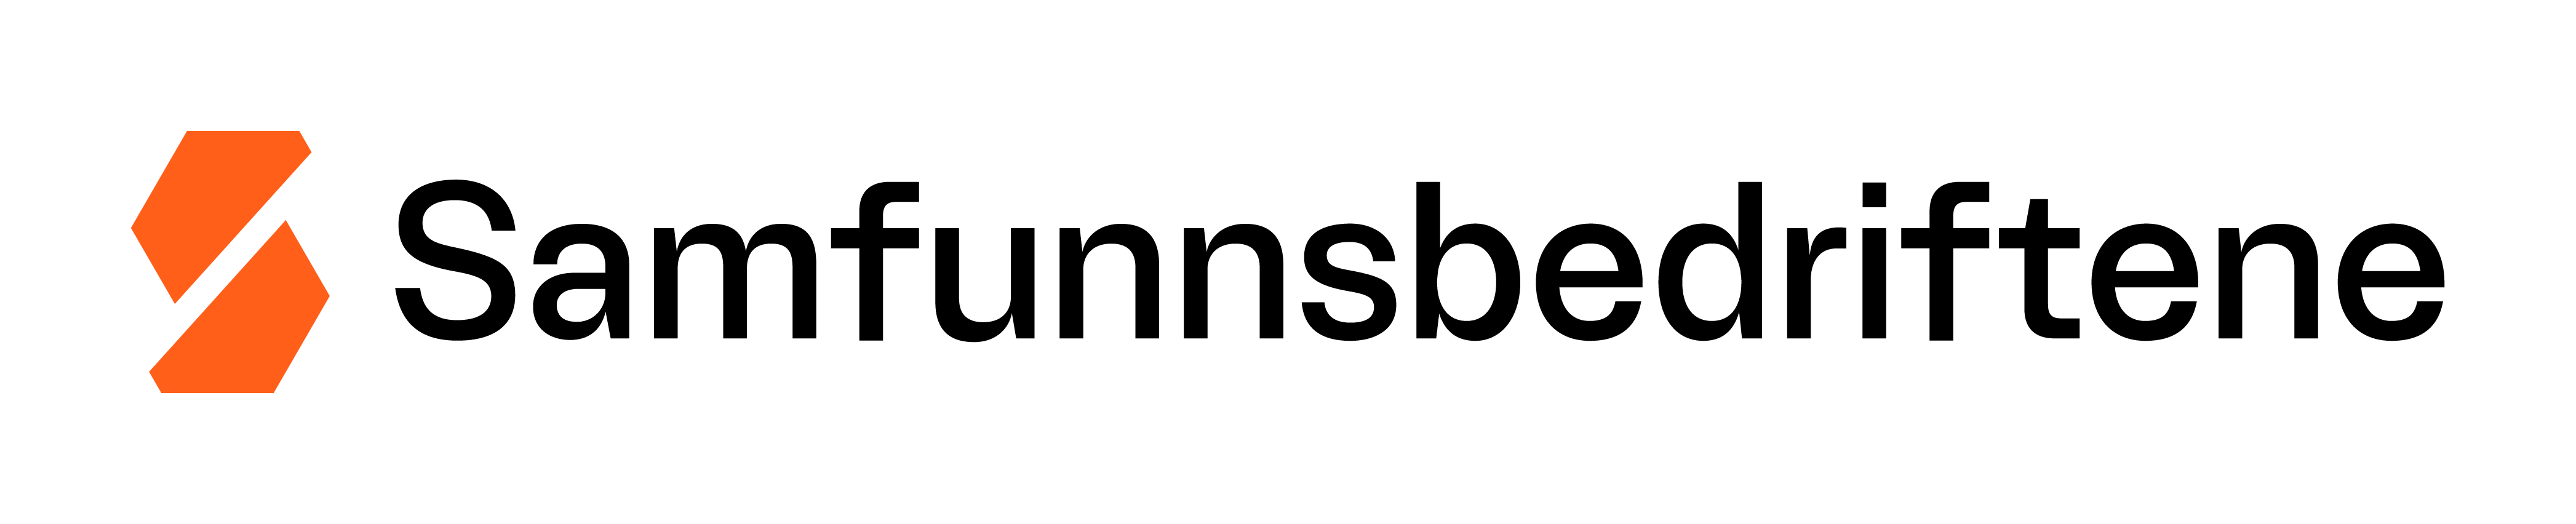 Sb logo pos rgb